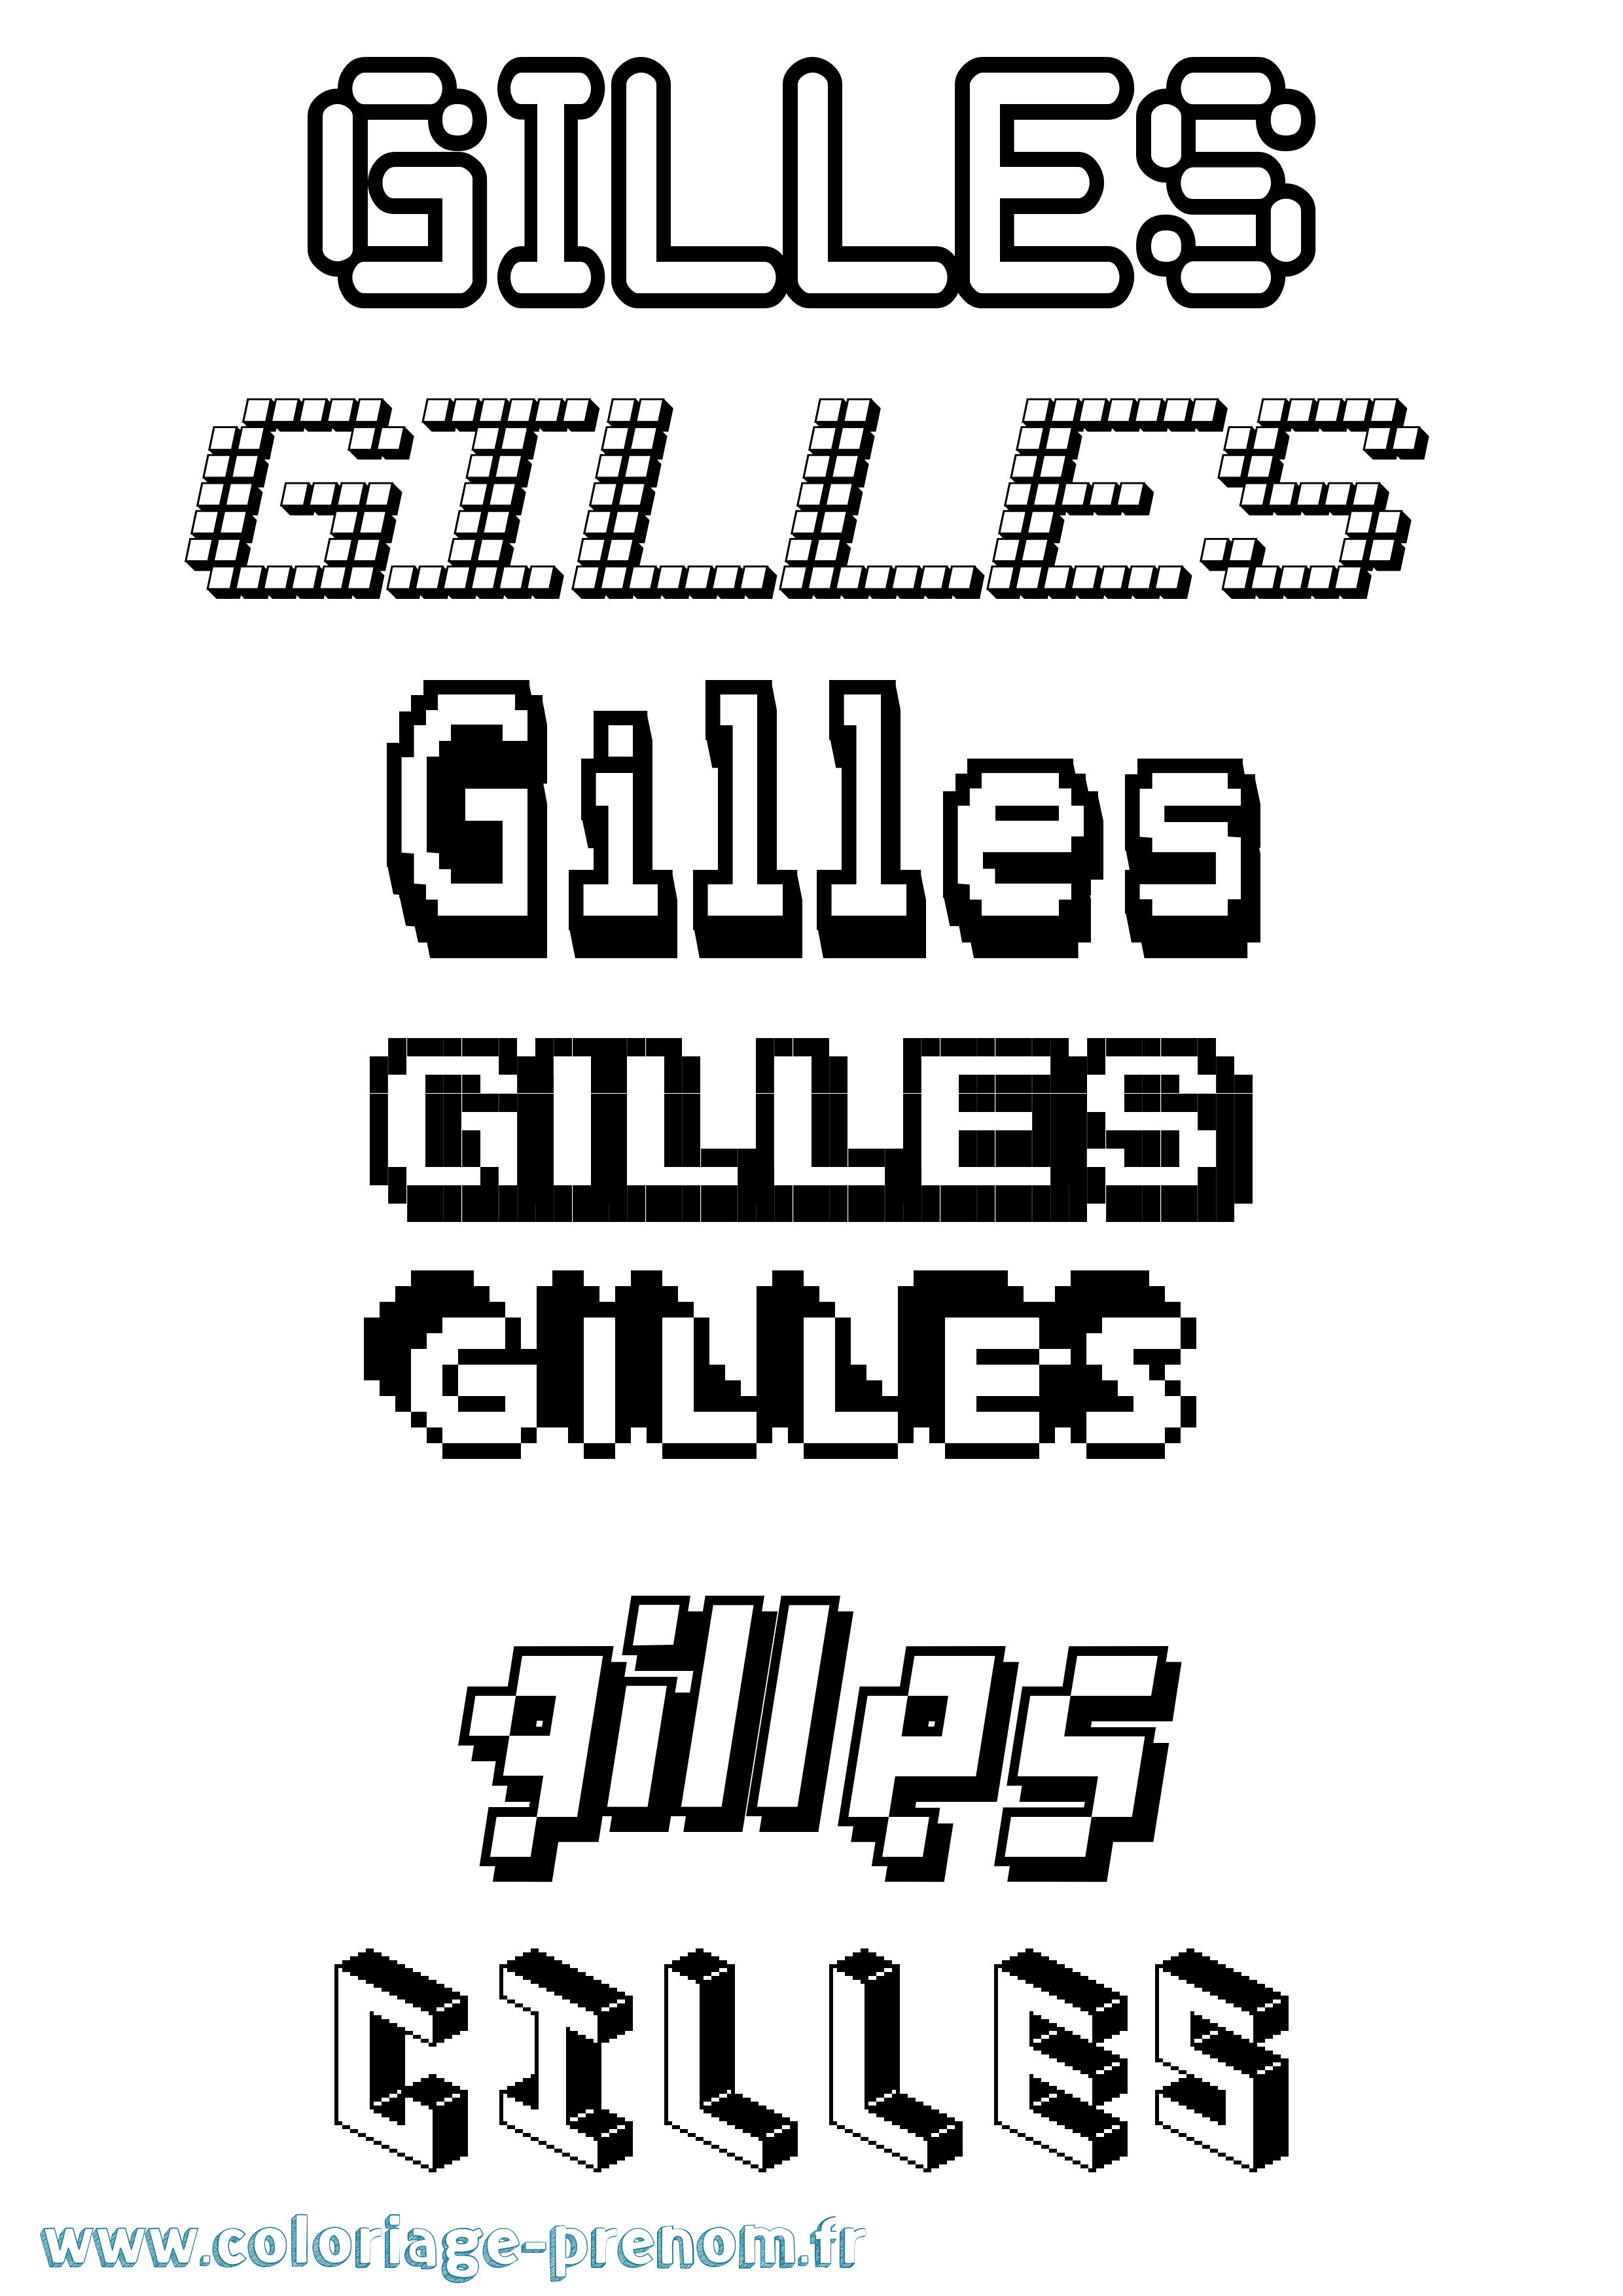 Coloriage prénom Gilles Pixel